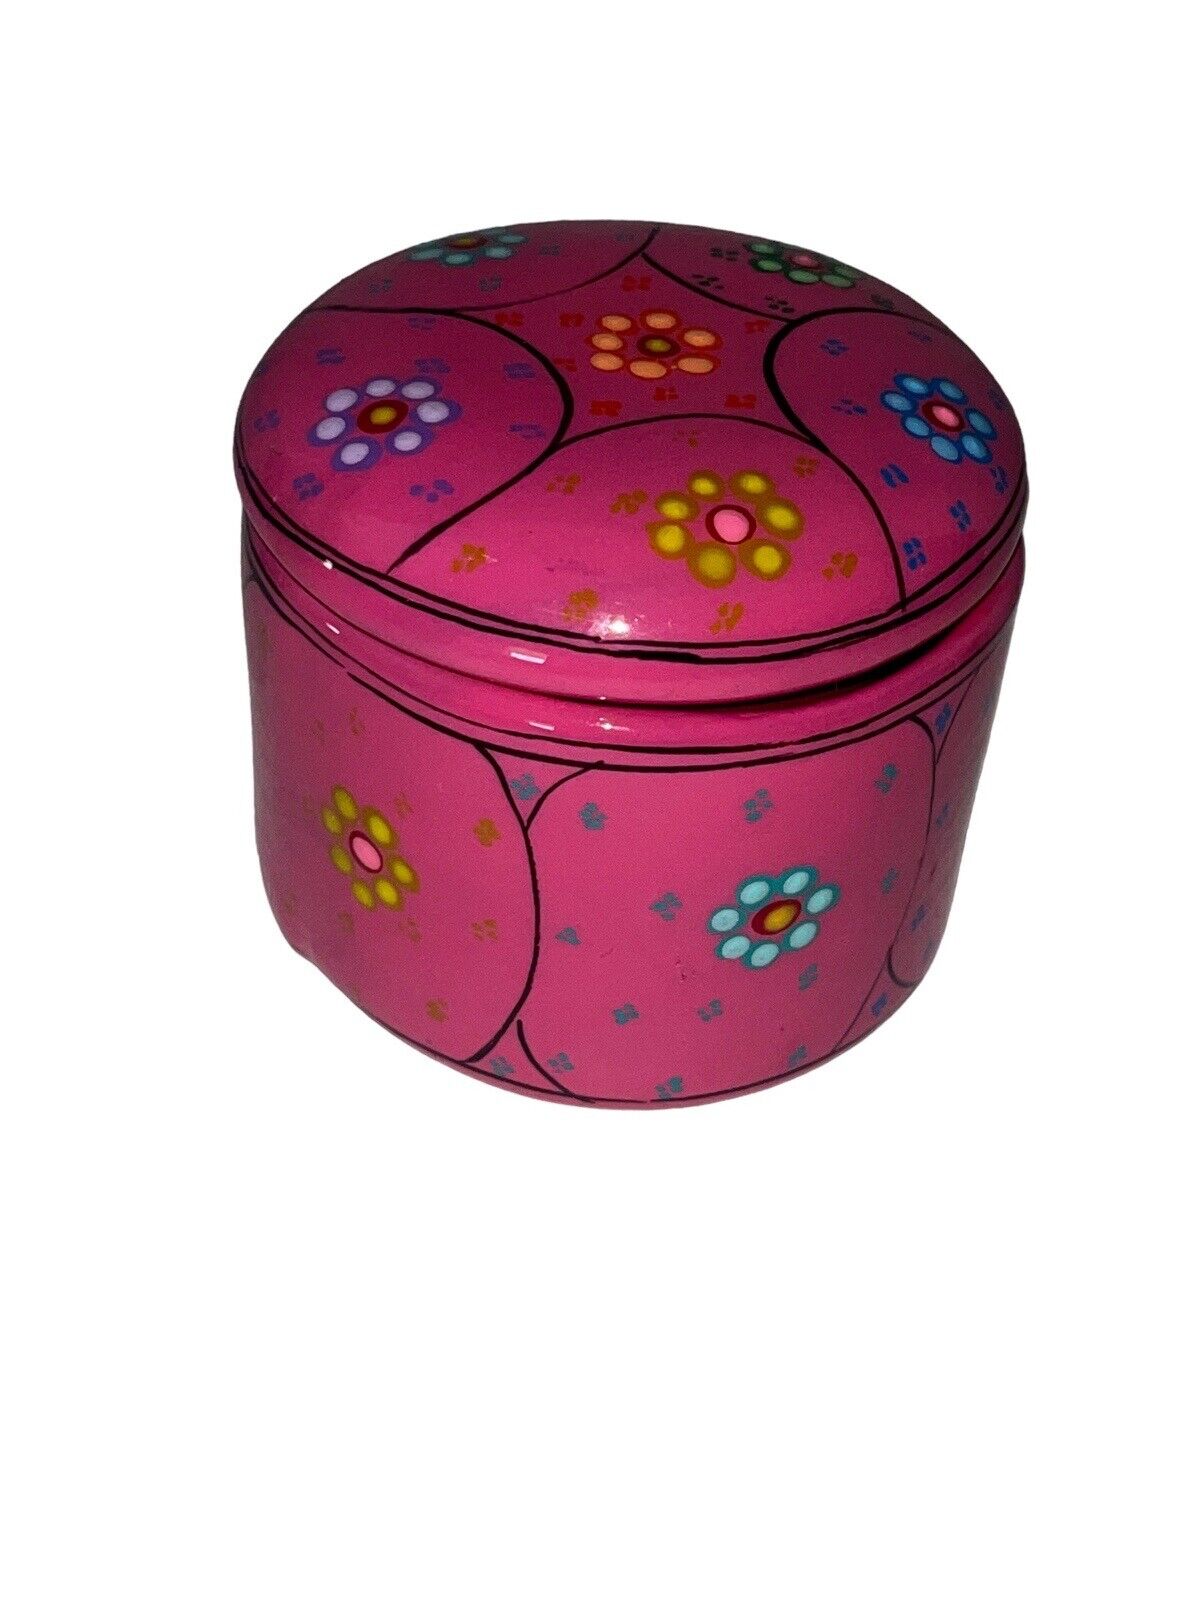 Pink And Floral Ceramic Trinket Jar